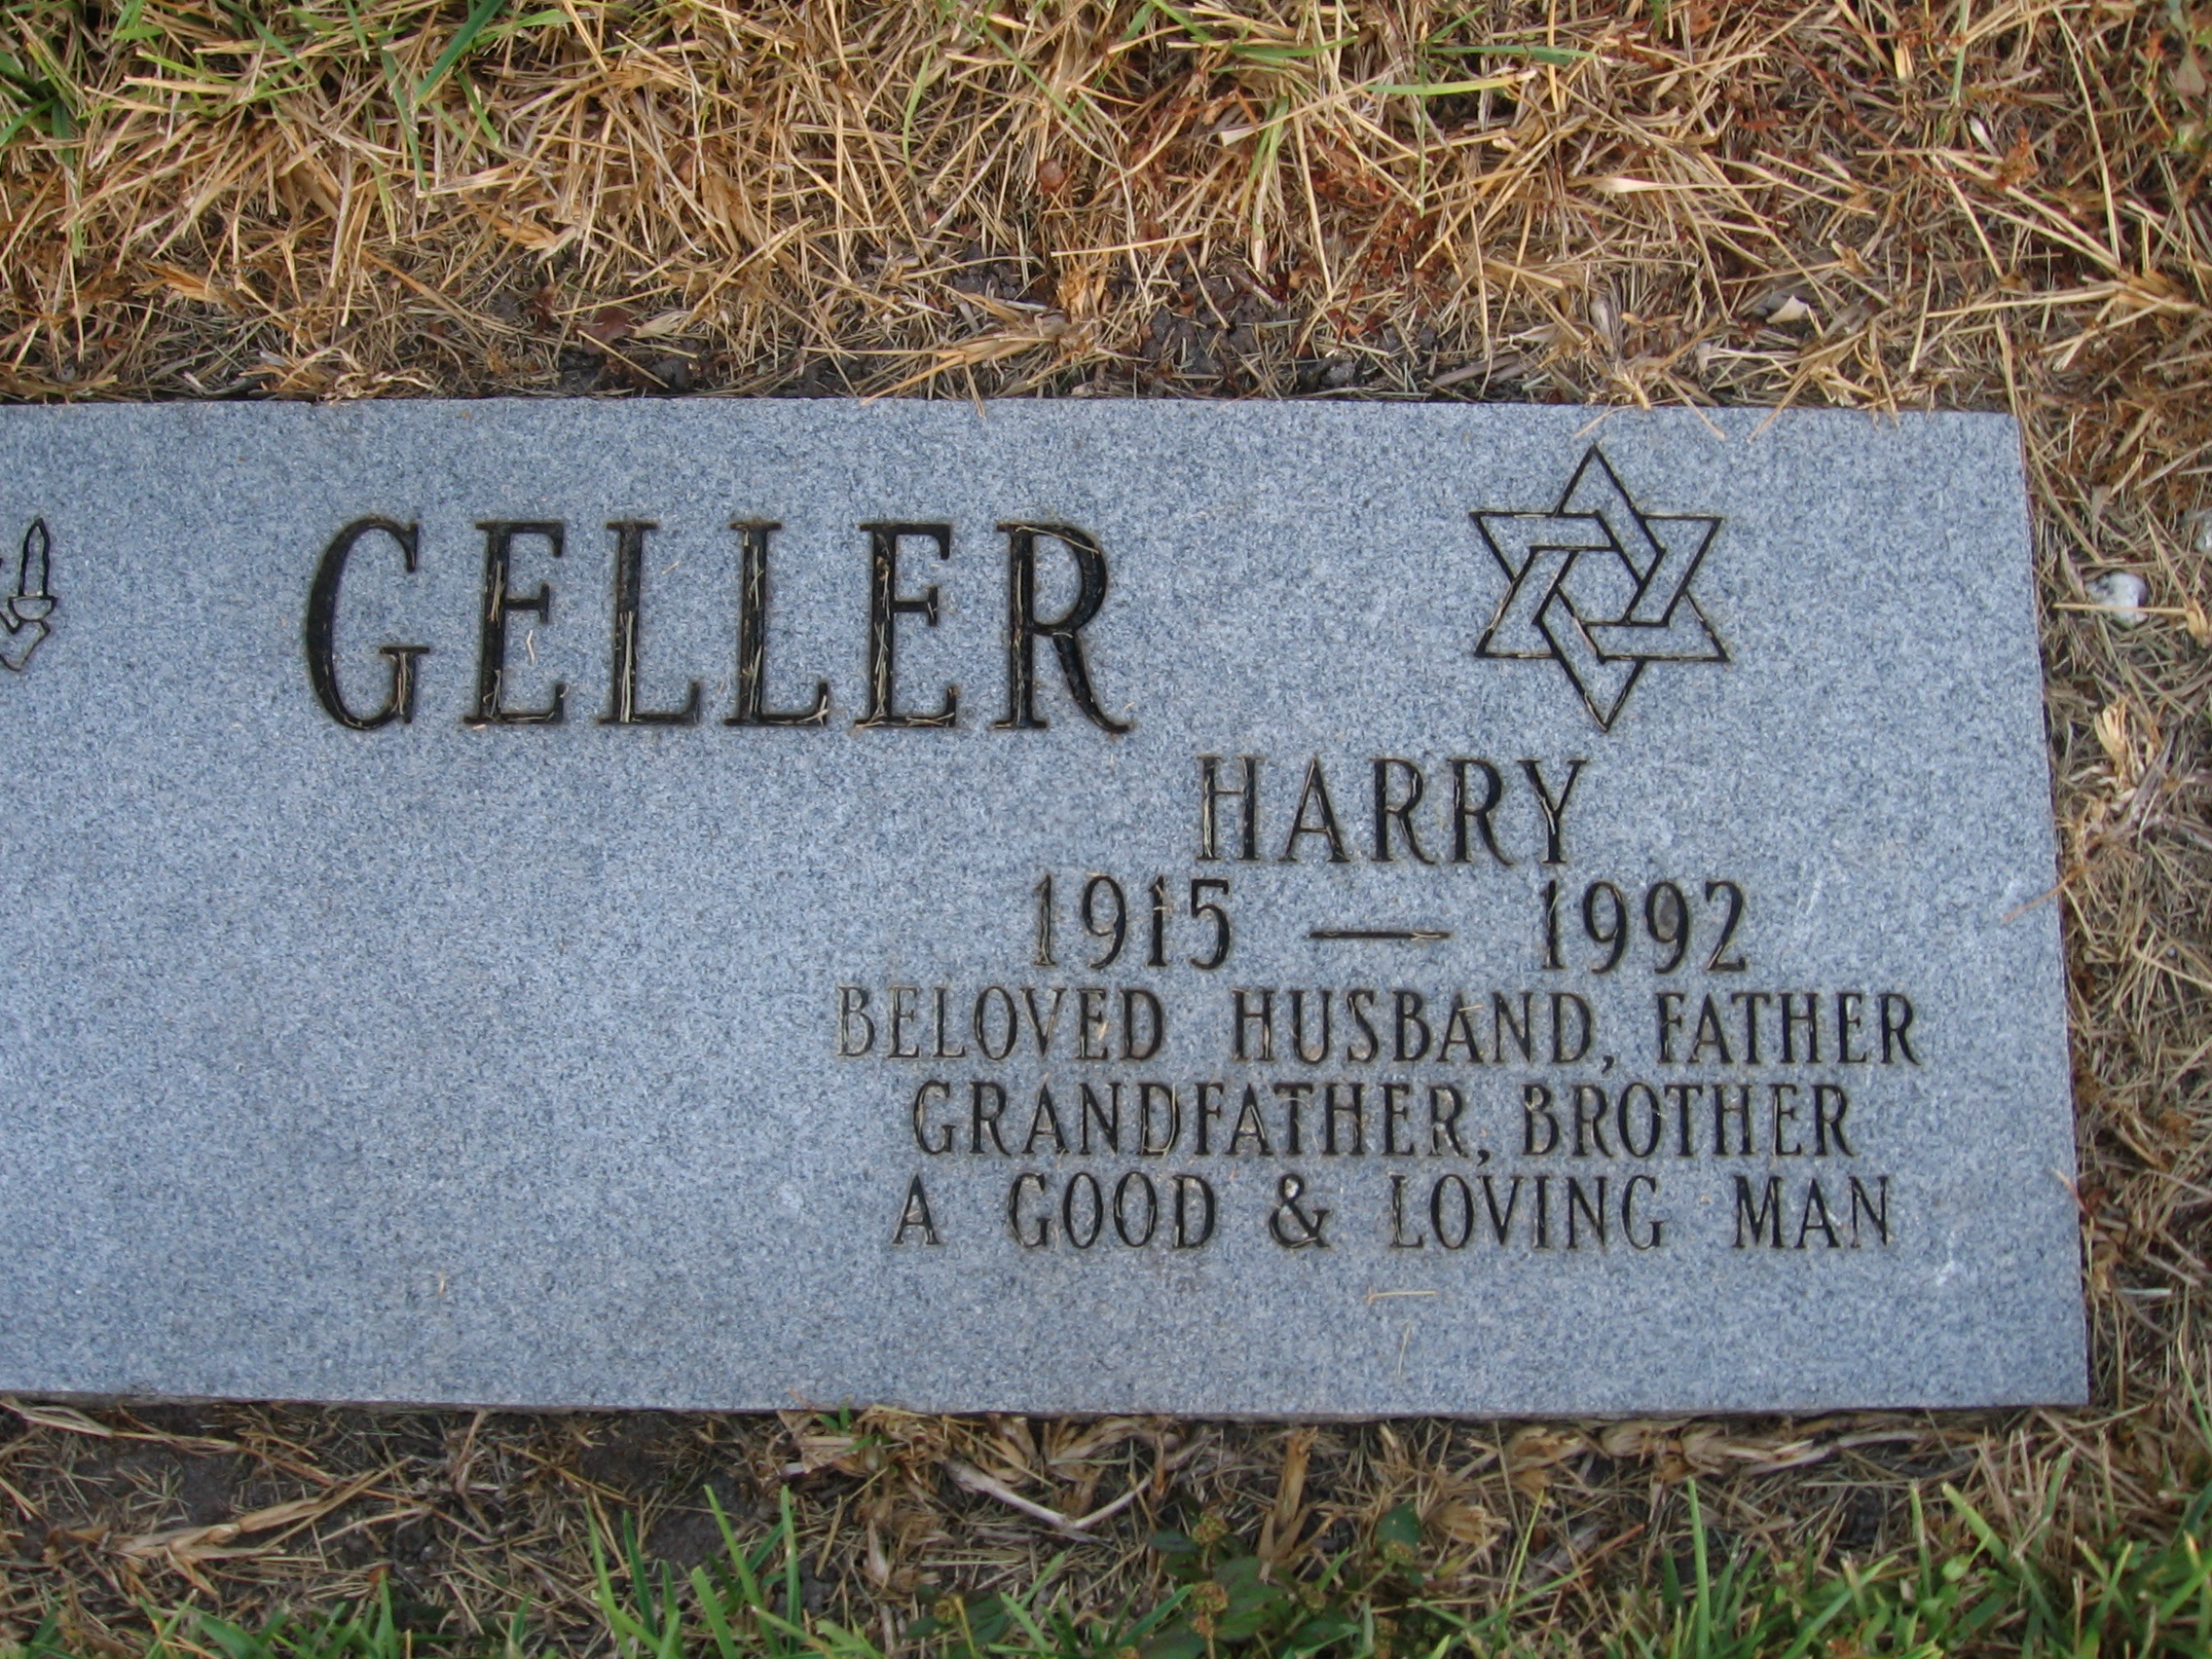 Harry Geller